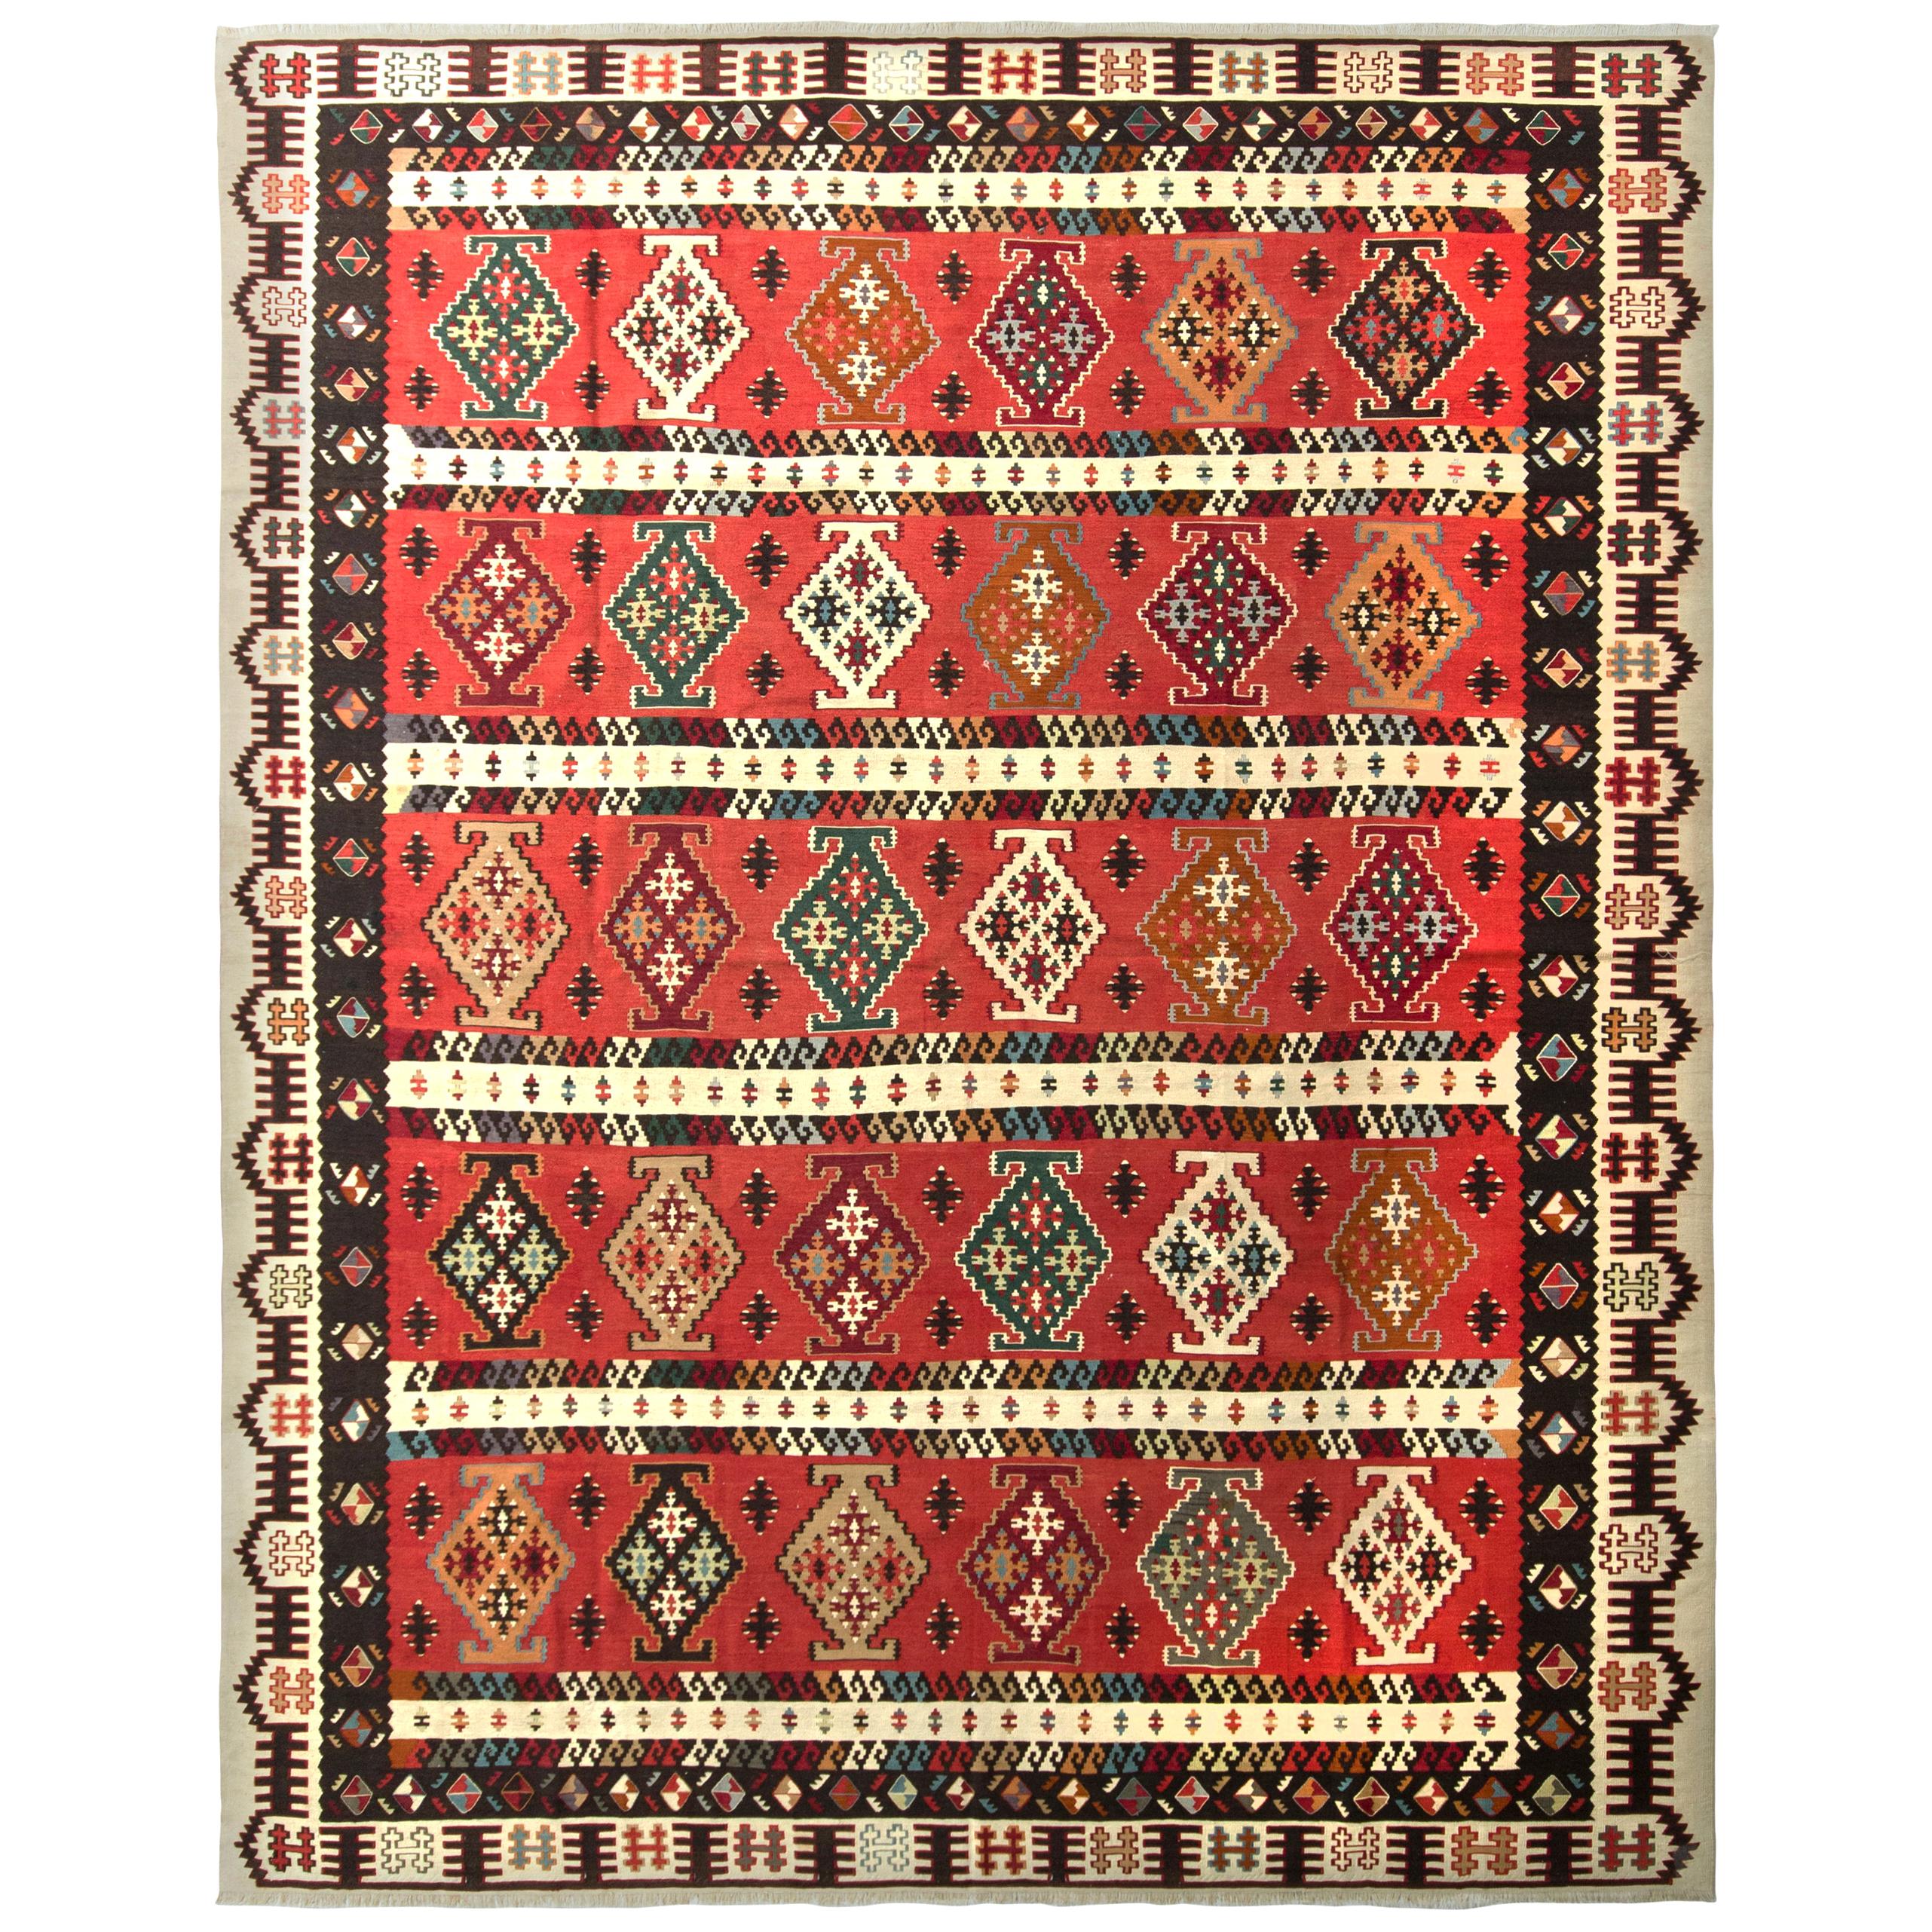 Vintage Midcentury Kilim Rug in Red Beige-Brown Geometric Pattern by Rug & Kilim